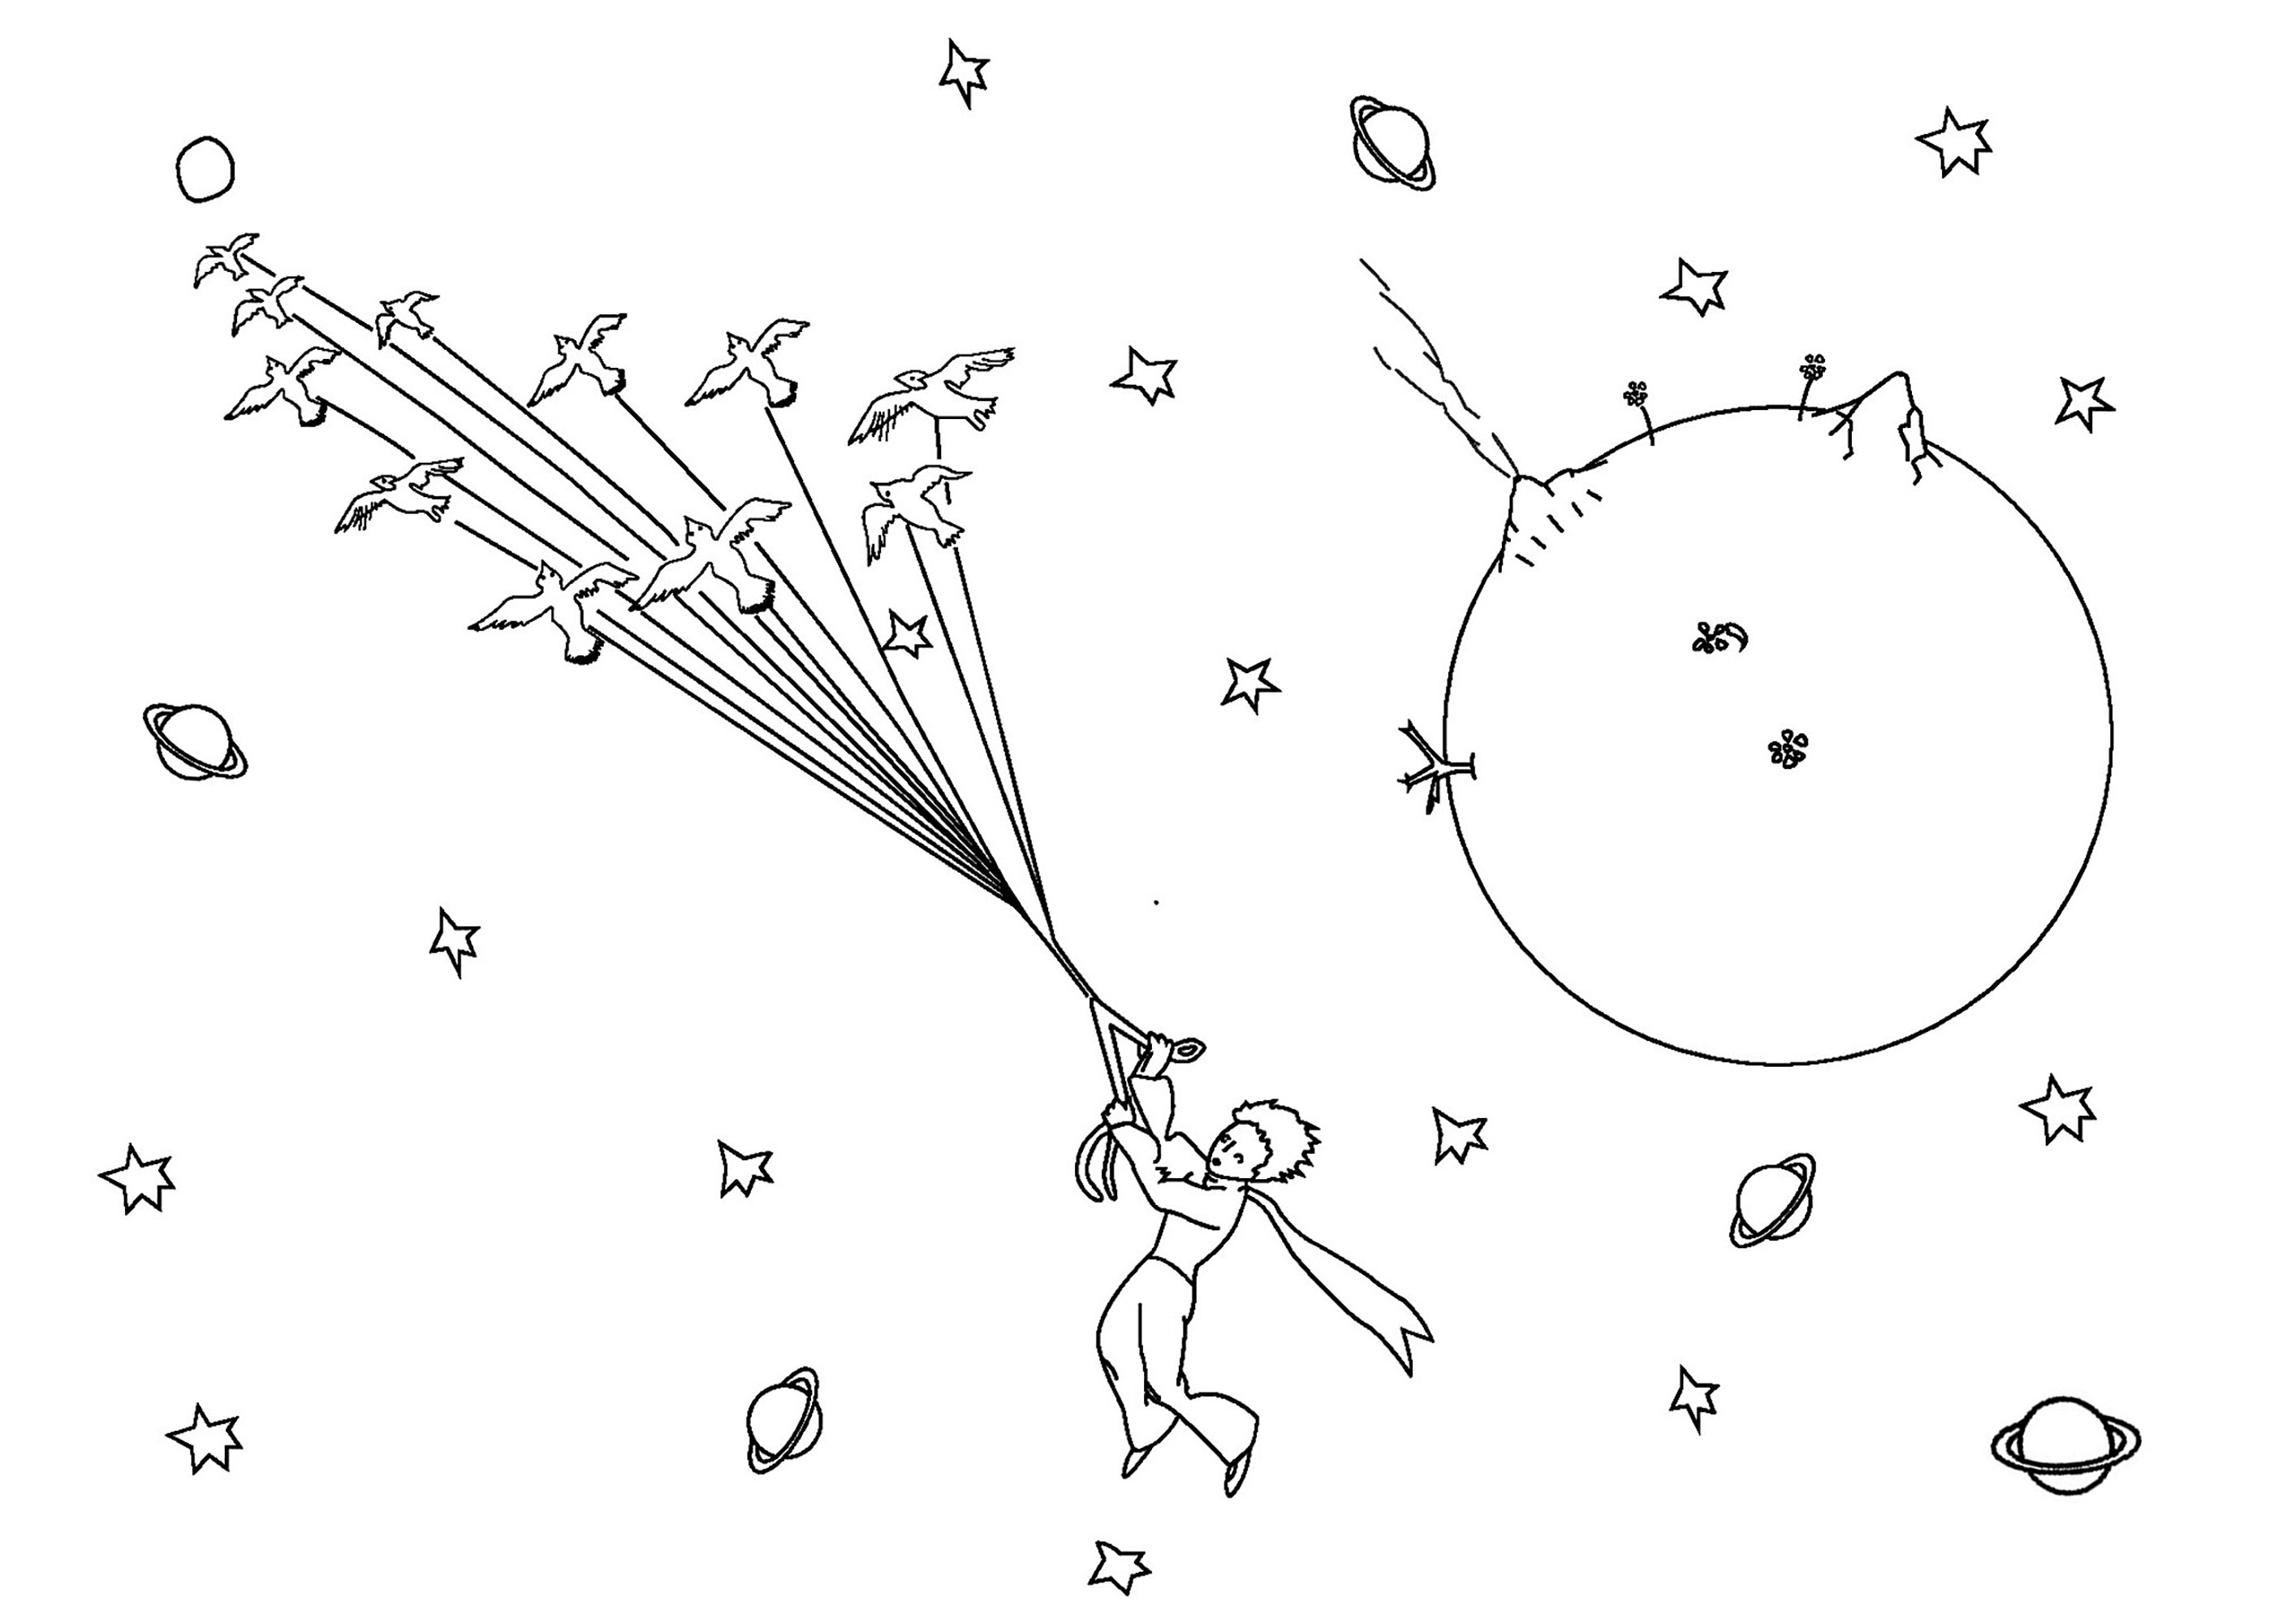 Le Petit Prince s'envole et navigue dans l'espace à côté d'une planète et au milieu d'étoiles et d'autres planètes lointaines